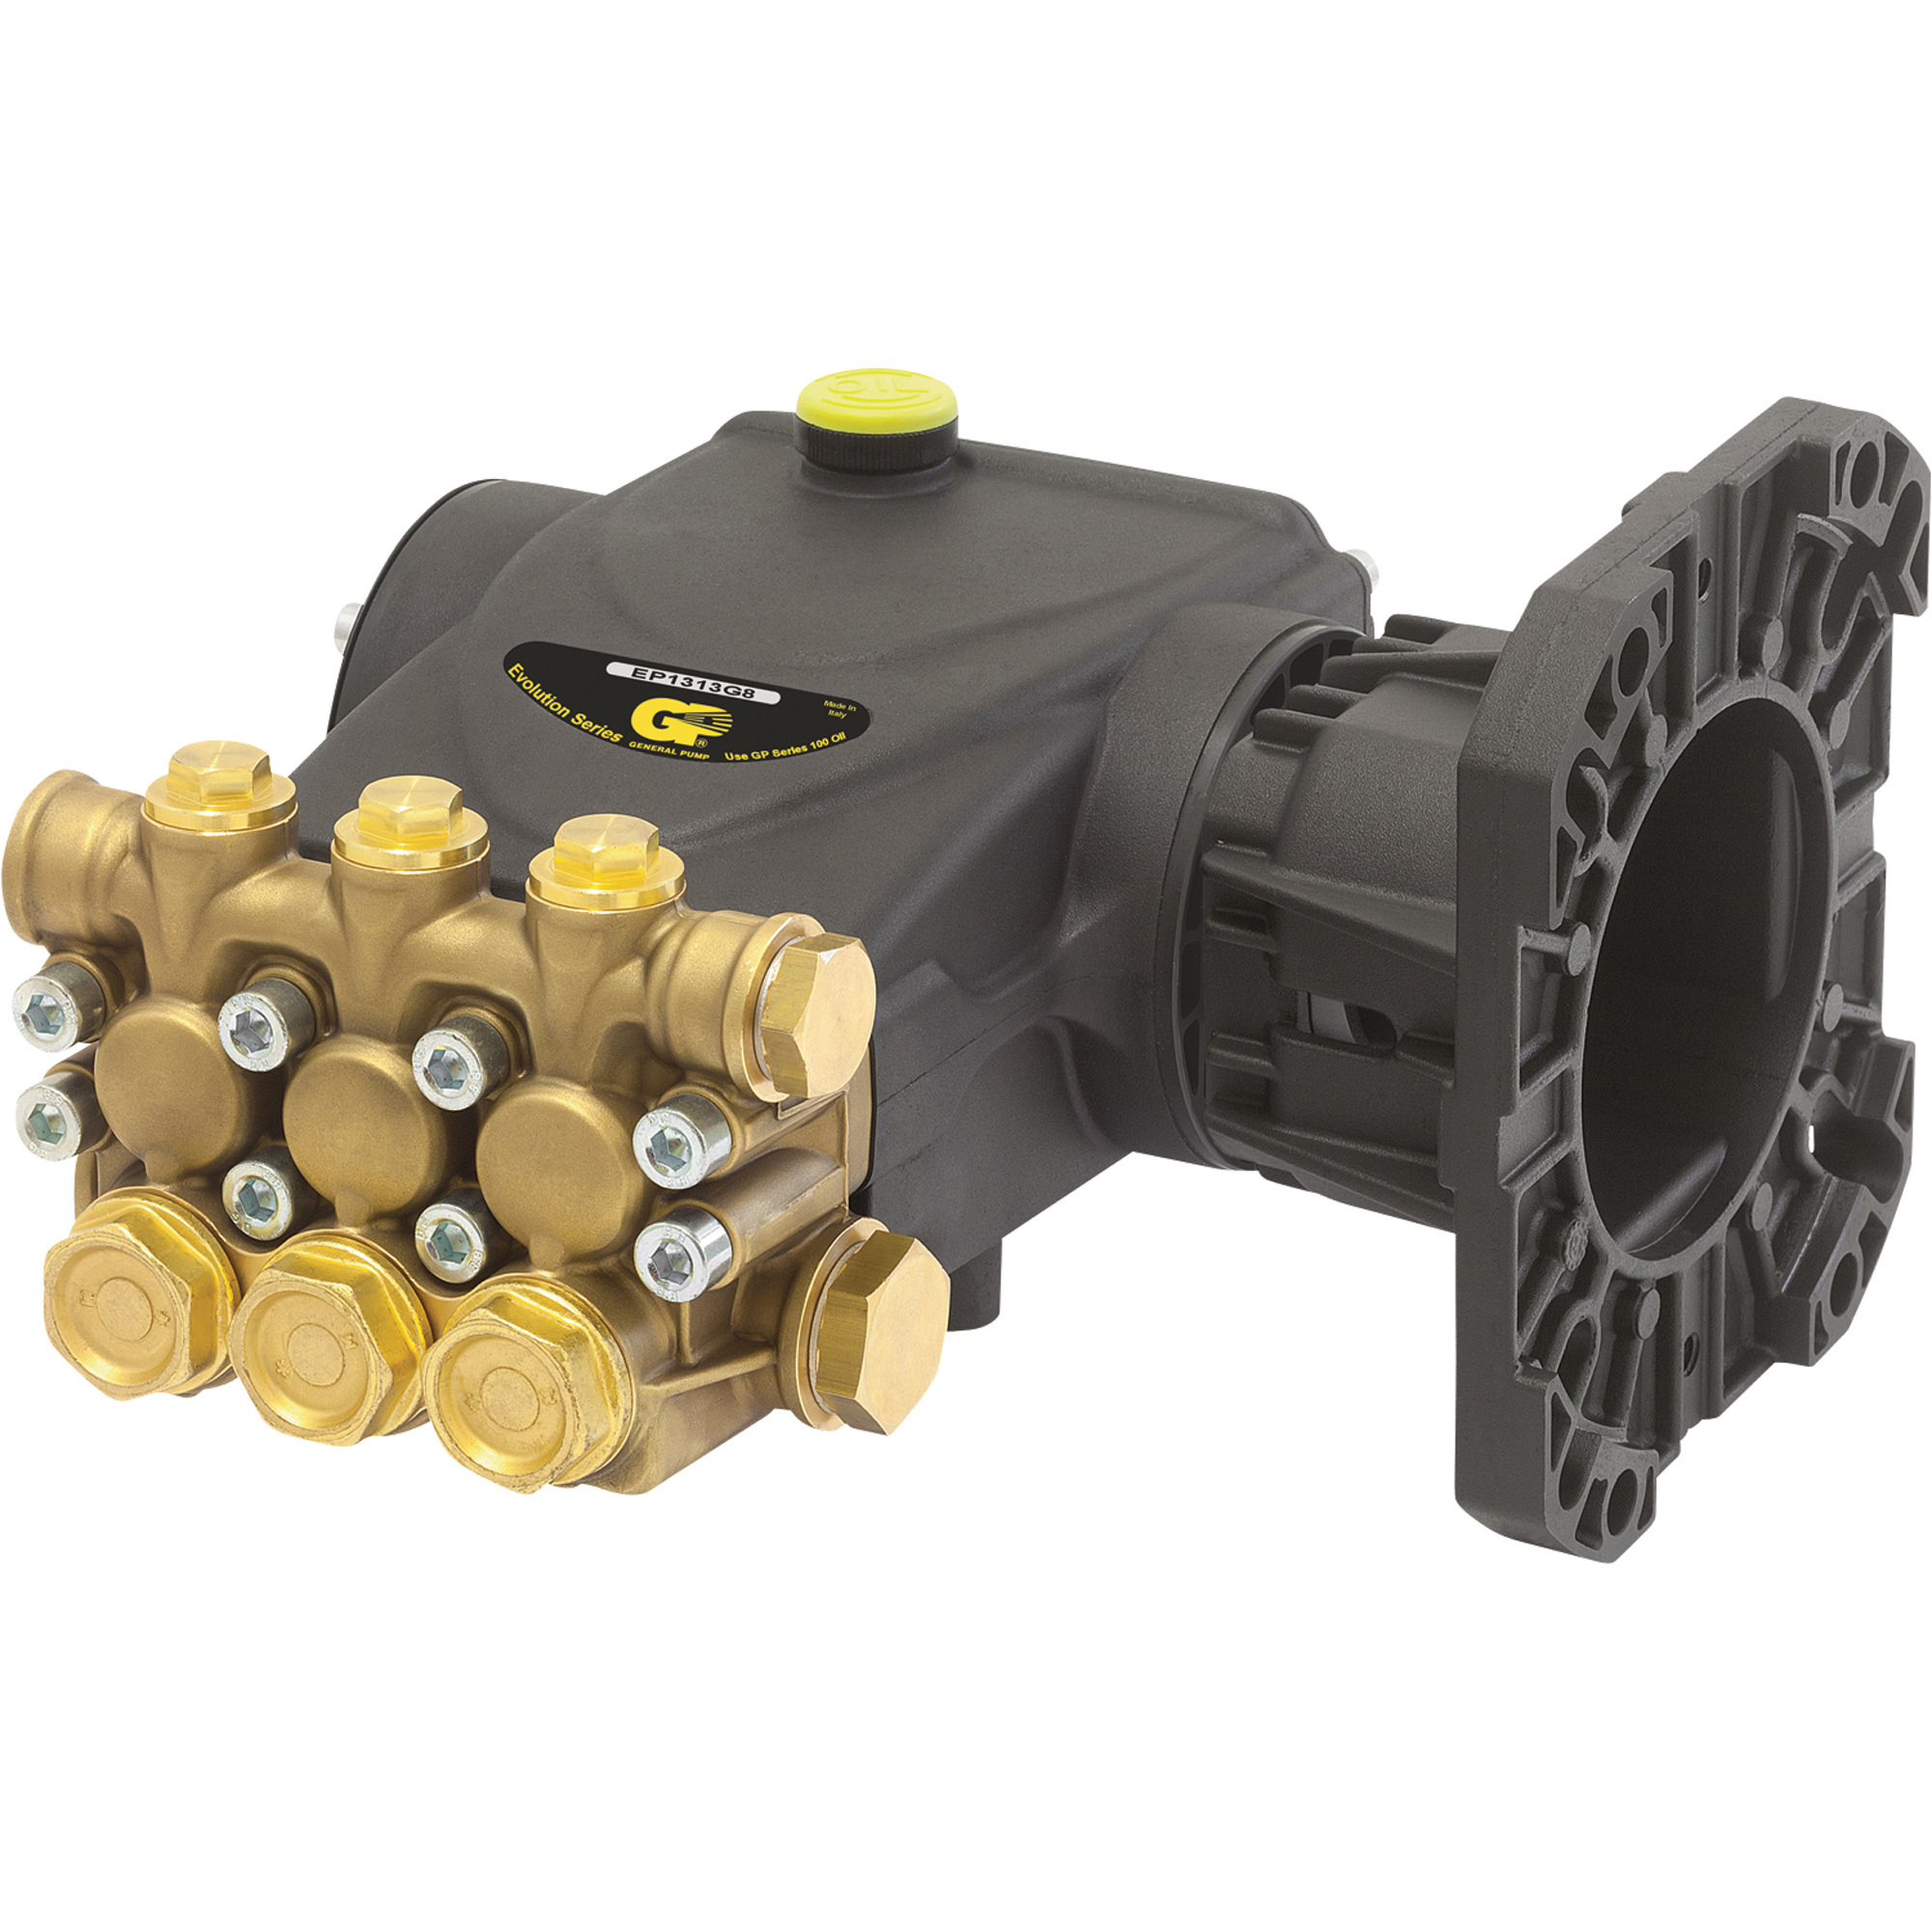 General Pump Triplex Pressure Washer Pump â 4000 PSI, 4.0 GPM, Gas Flange, Direct Drive, Model EP1313G8